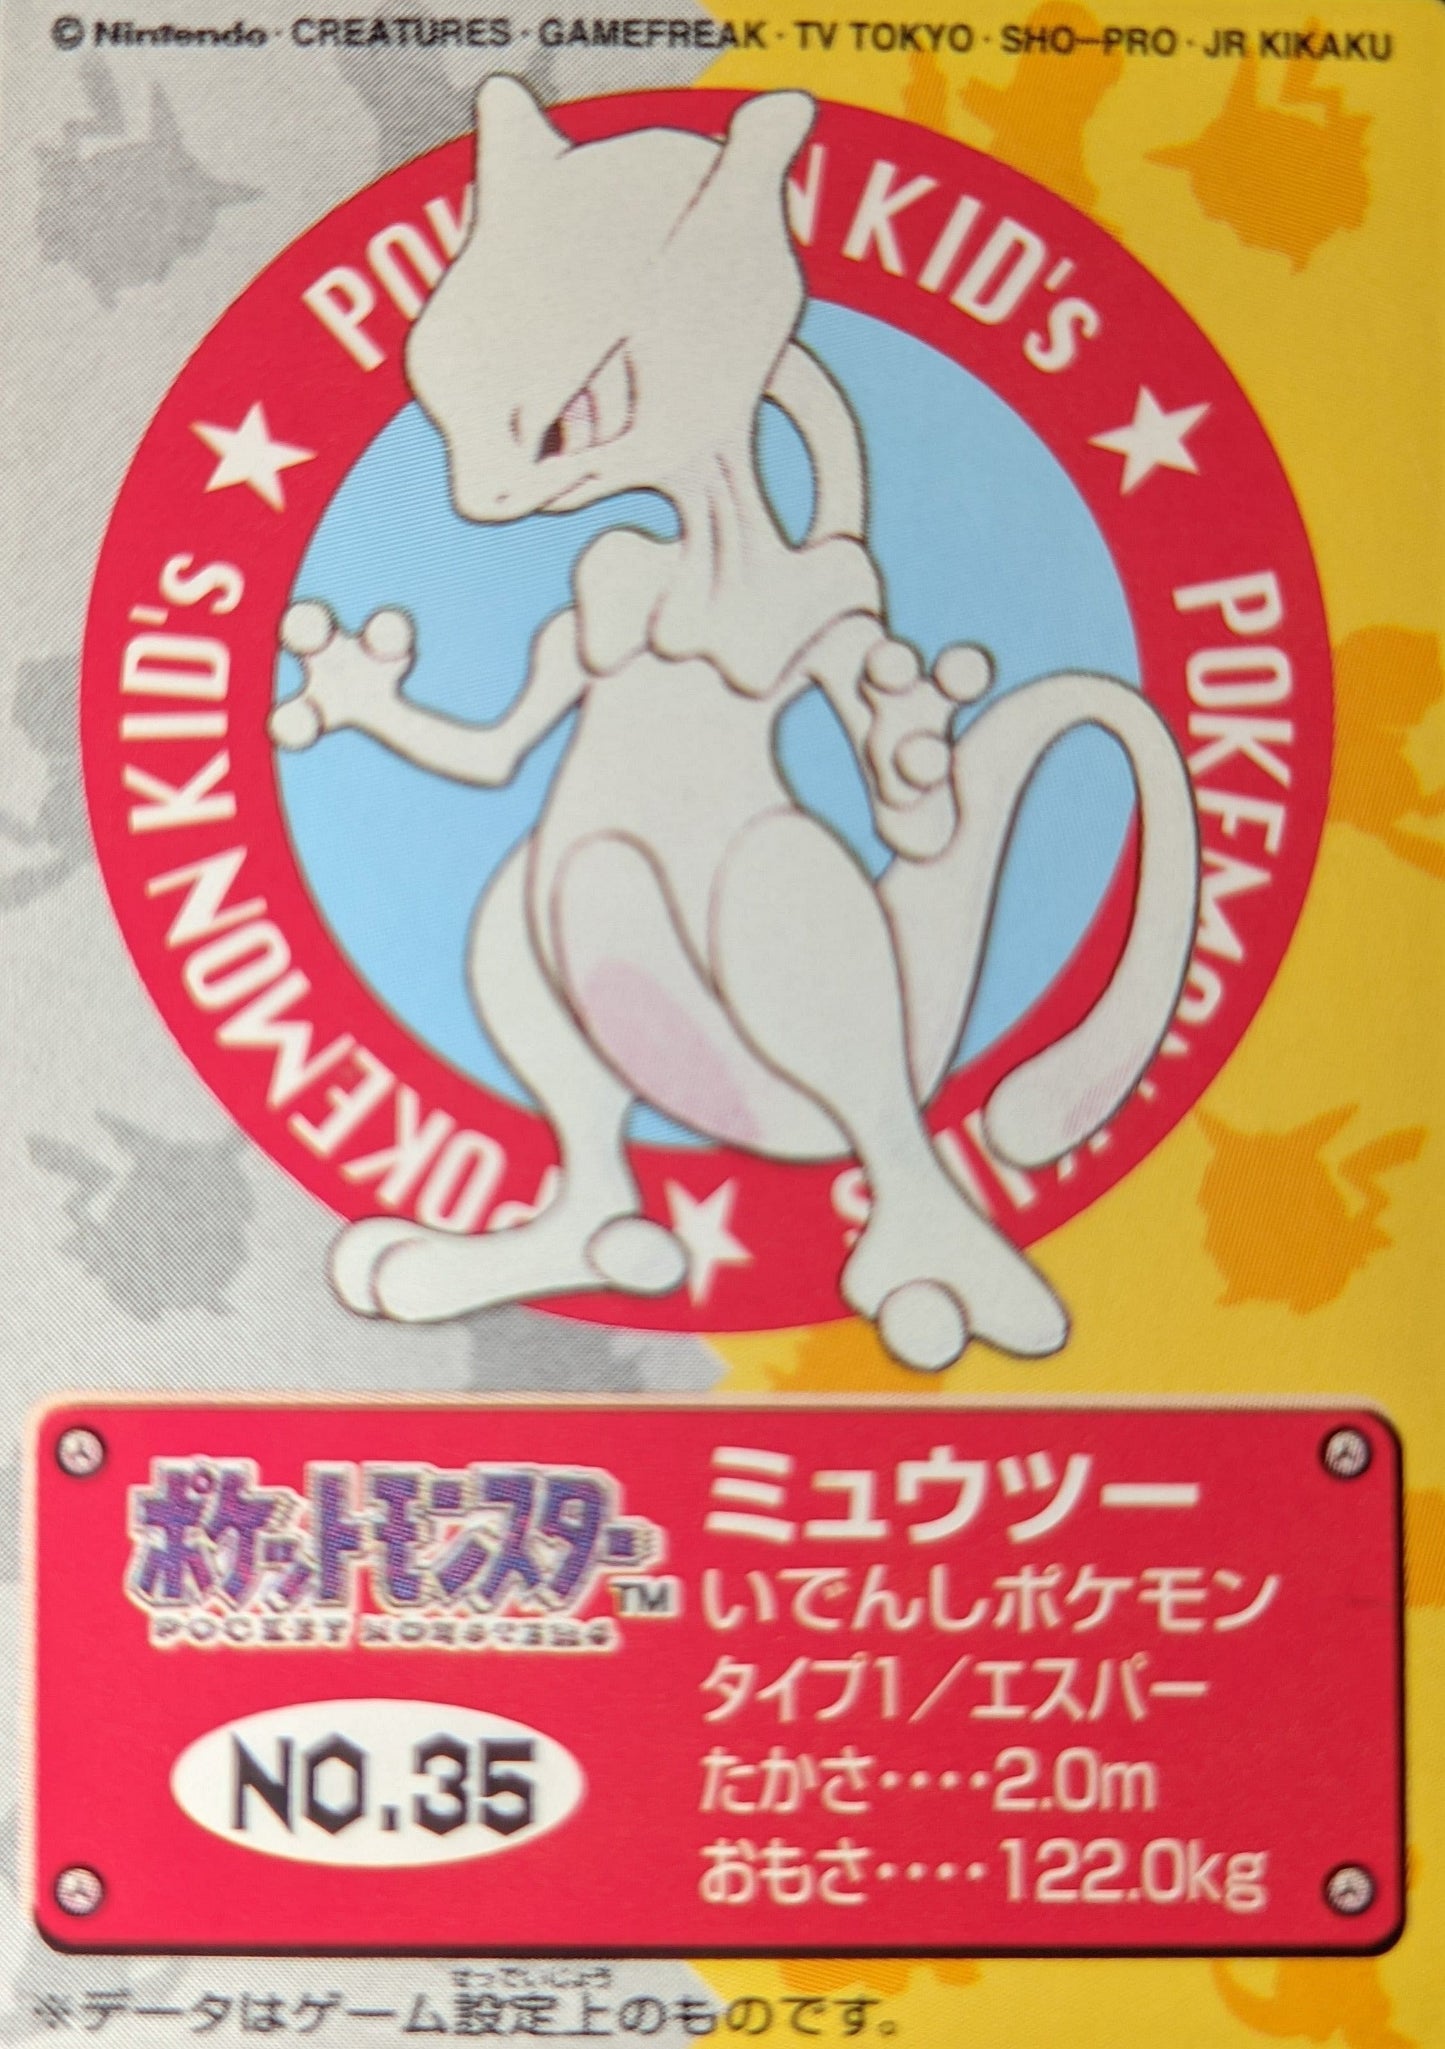 Mewtu Nr. 35 | Pokemon Kinder ChitoroShop